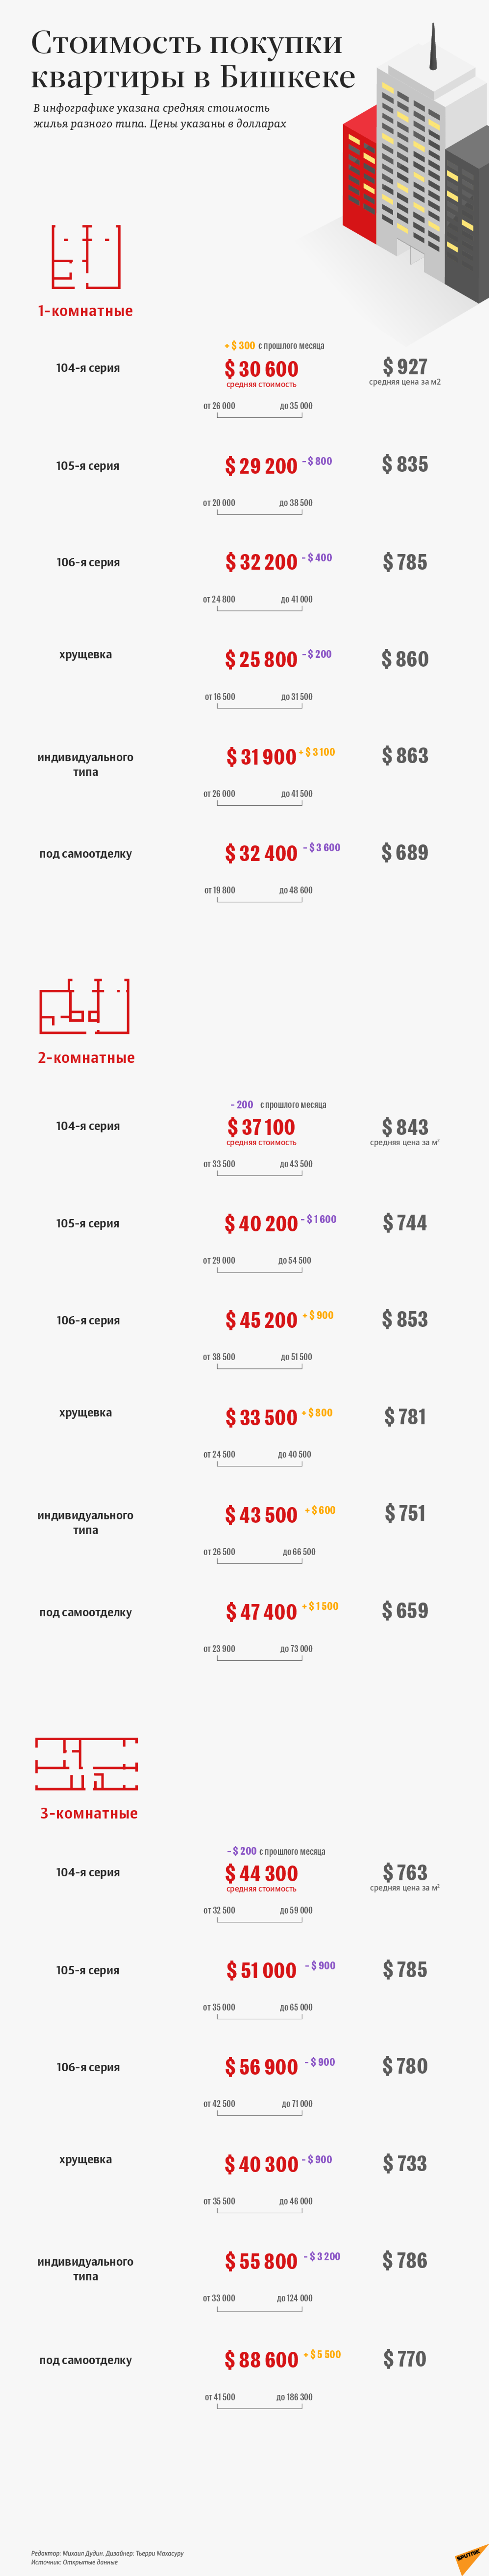 Цены на квартиры в Бишкеке в Марте 2021 года - Sputnik Кыргызстан, 1920, 15.04.2021